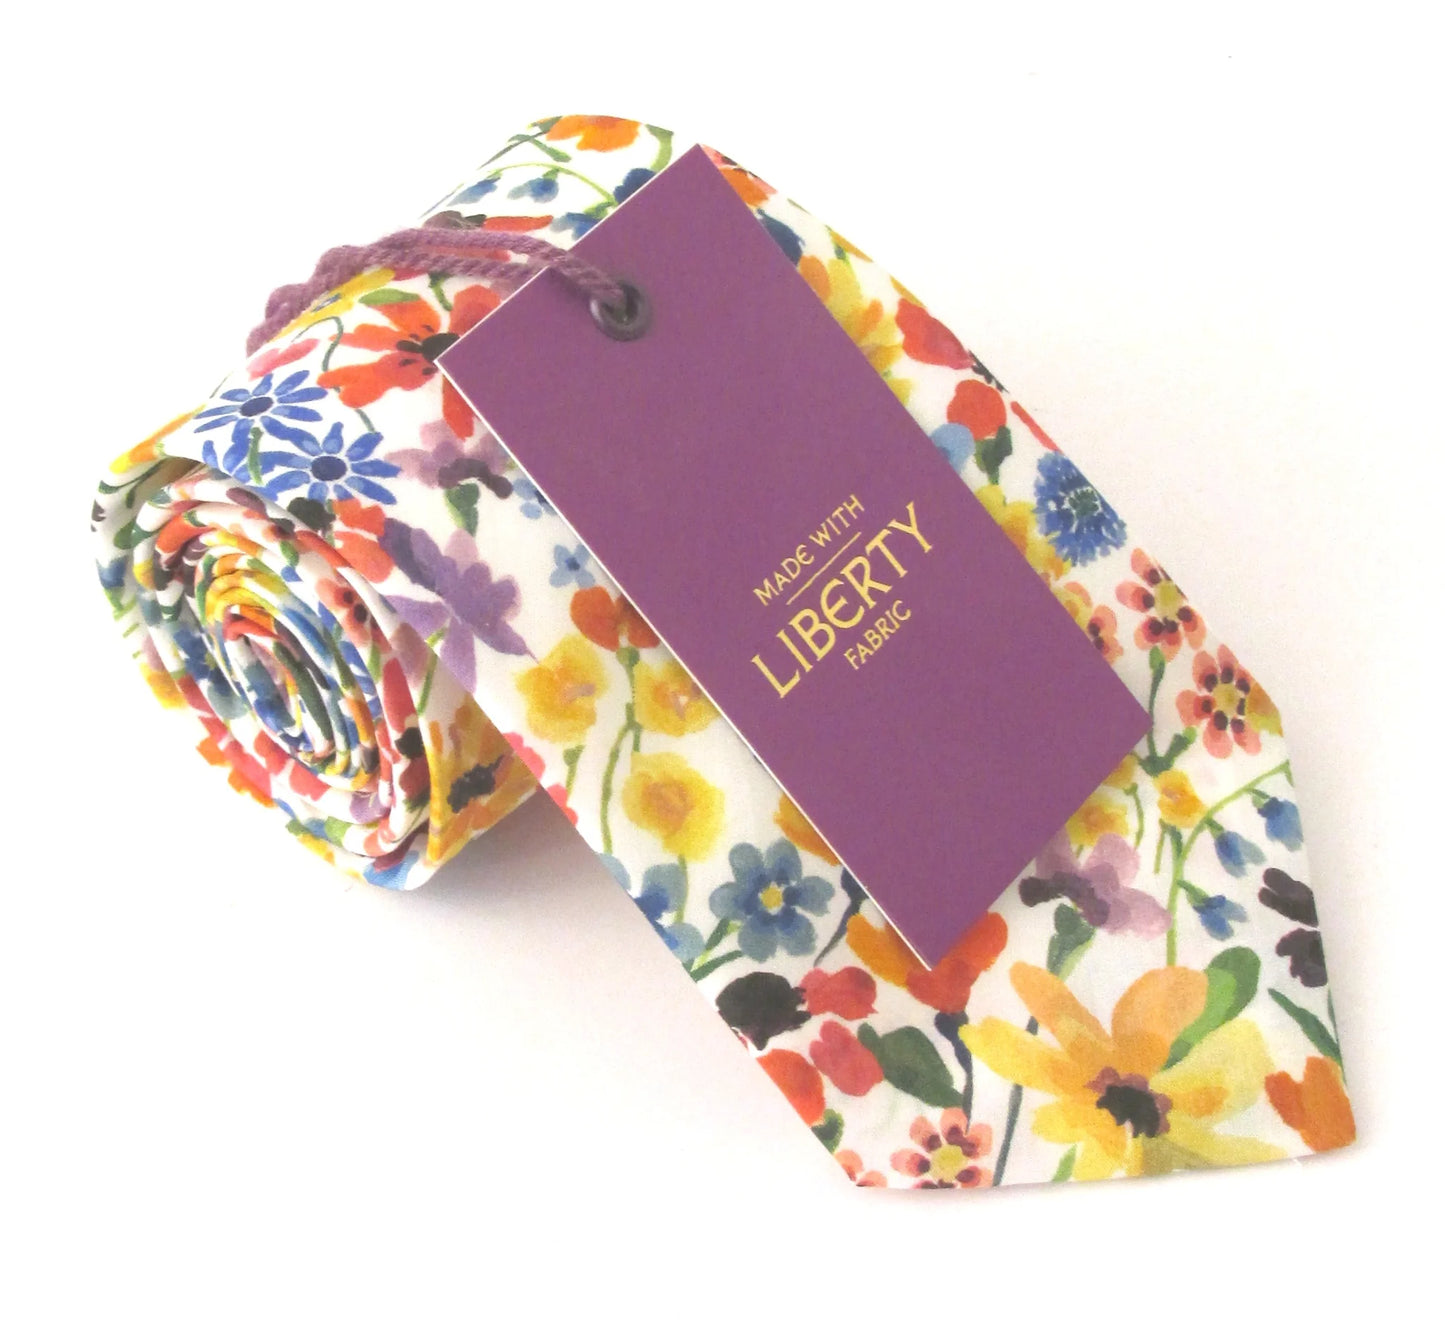 Dreams of Summer in multi Liberty fabric tie by Van Buck